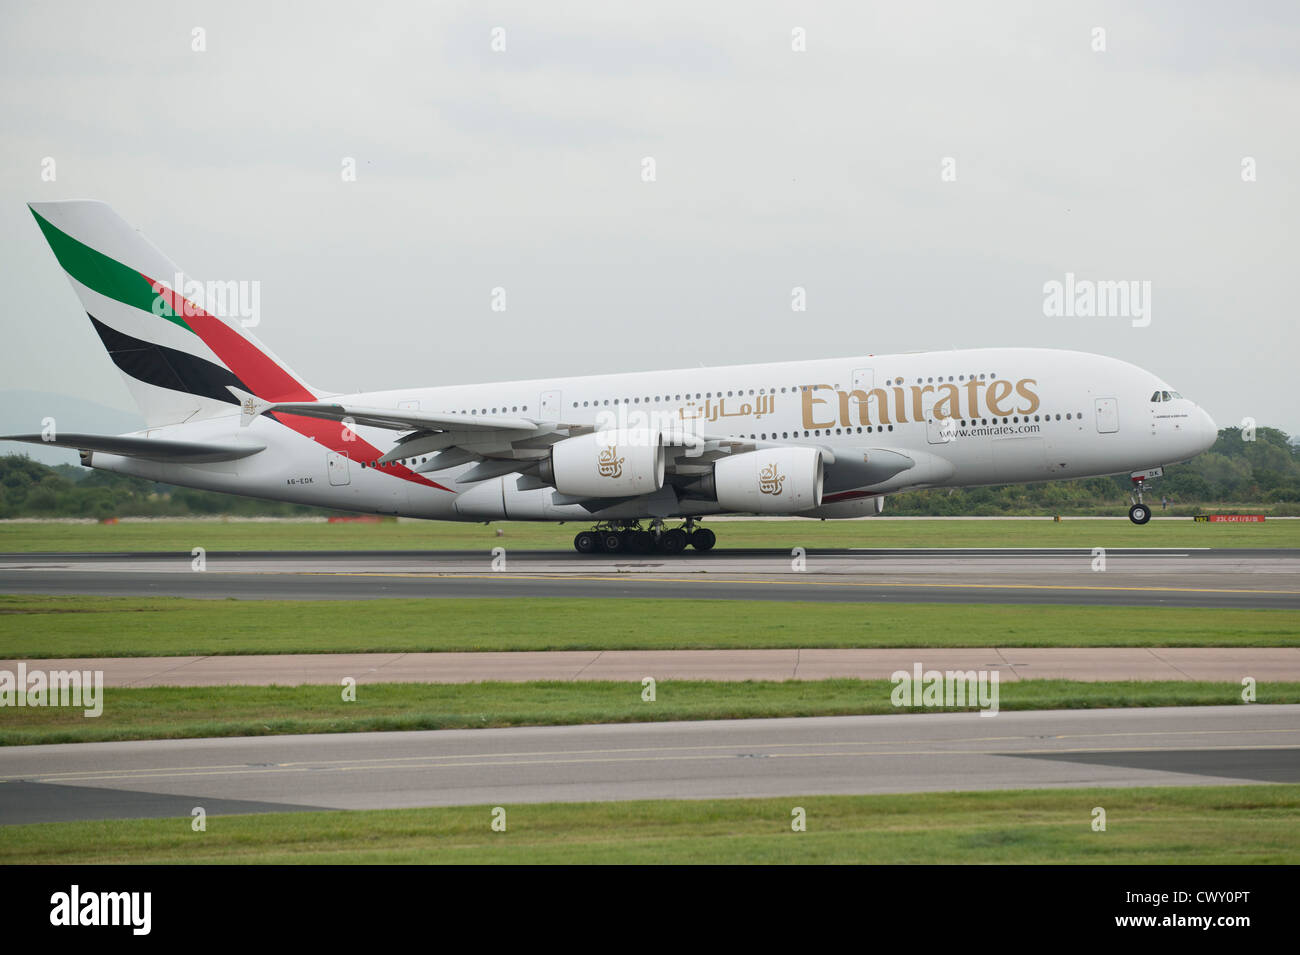 Un Airbus A380 de Emirates despegando desde el aeropuerto internacional de Manchester (uso Editorial solamente) Foto de stock